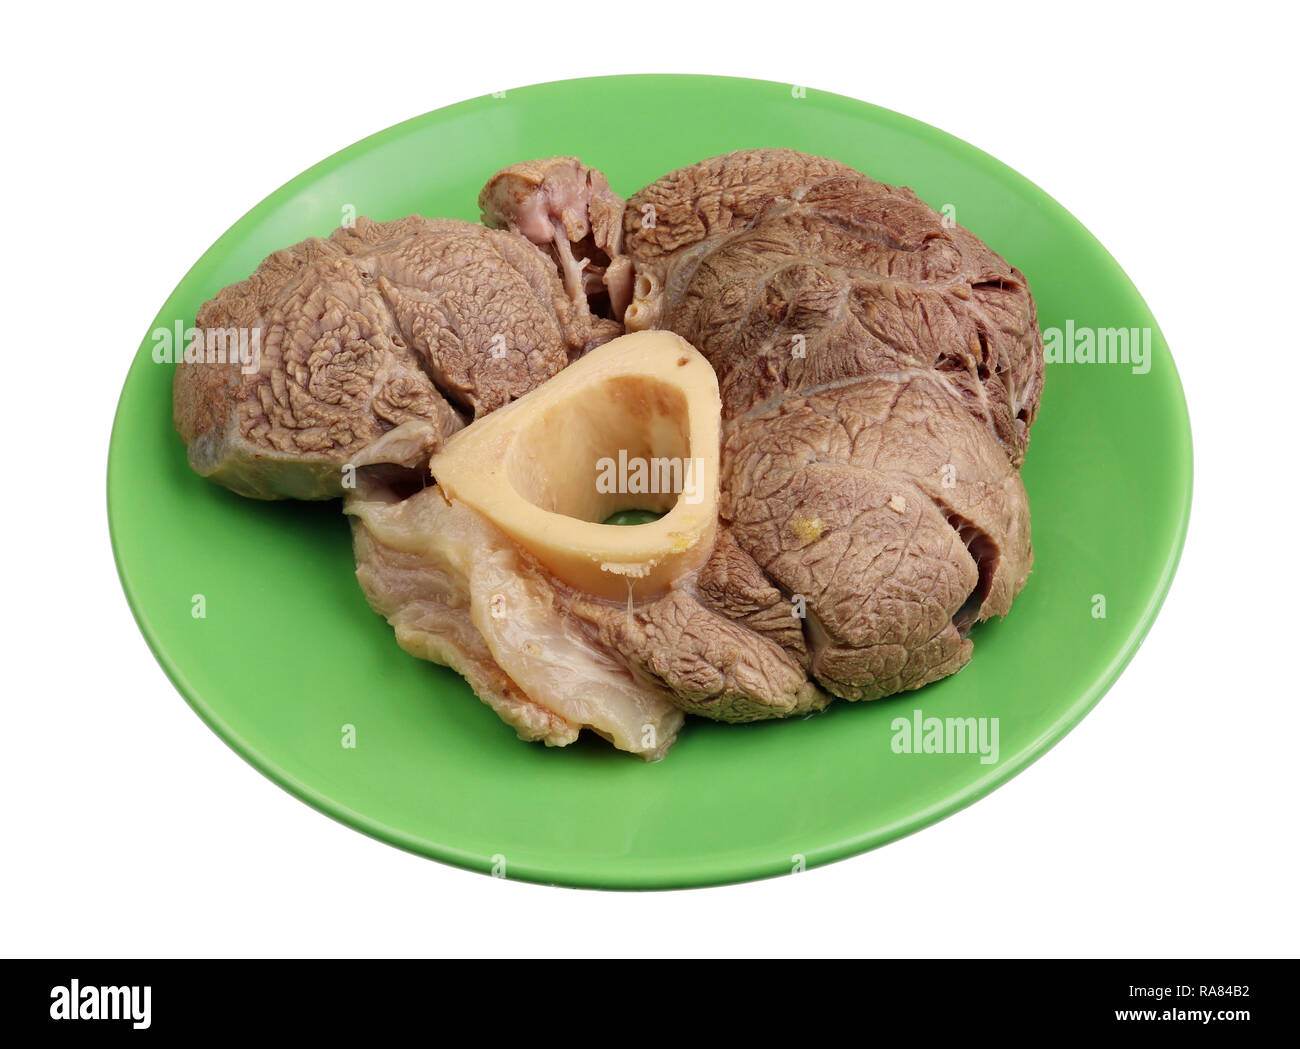 La viande bouillie de viande bovine - une base d'aliment diététique pour la restauration de l'hémoglobine. Gros plan studio isolated on white Banque D'Images